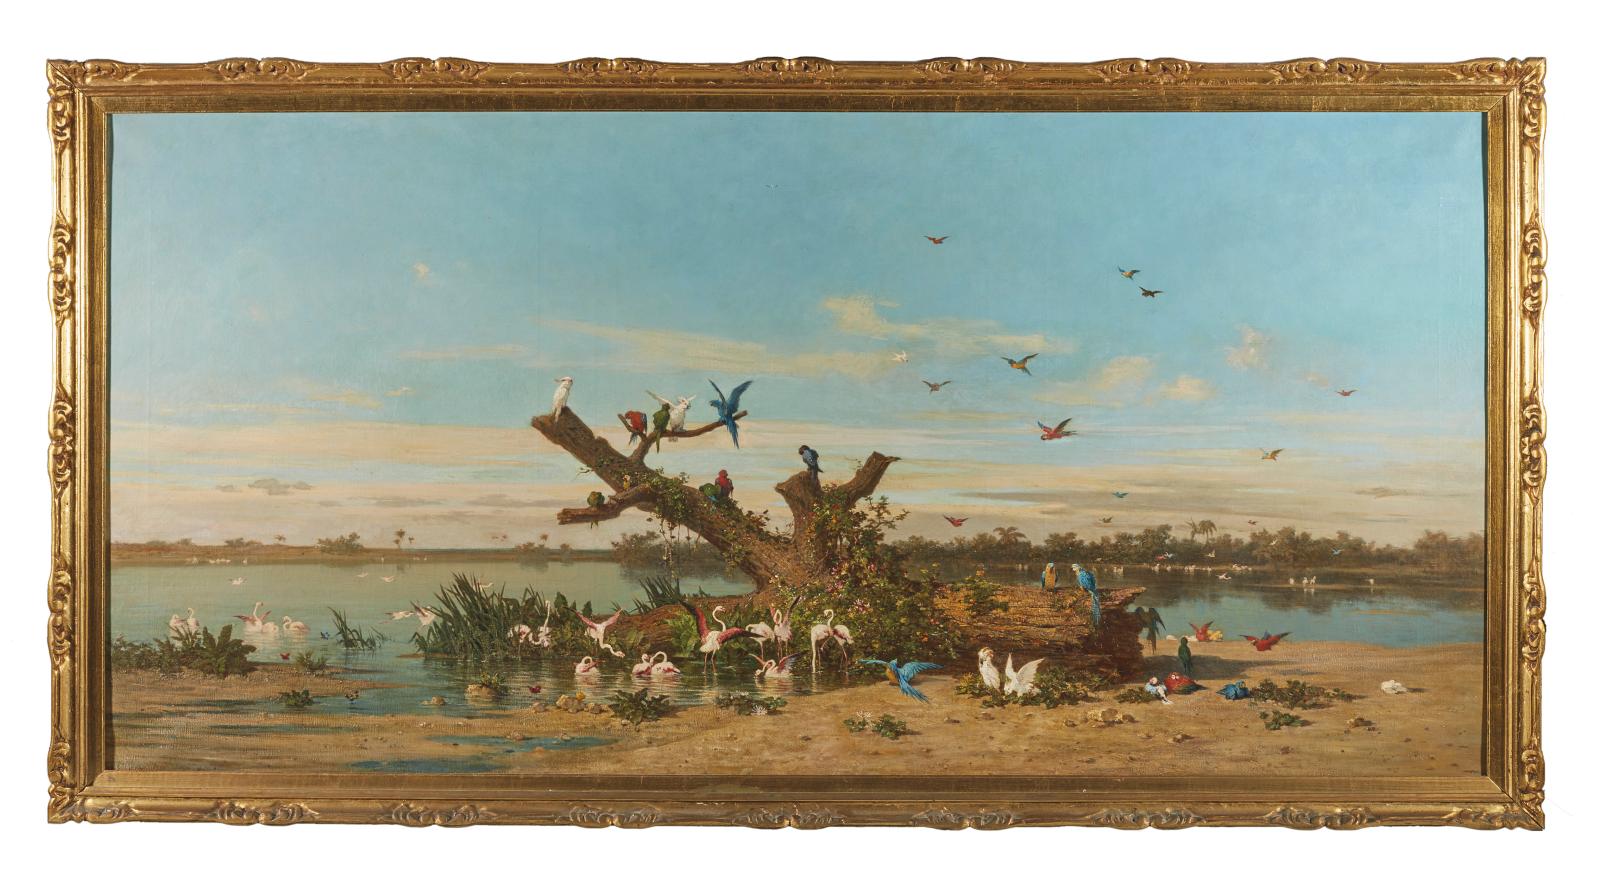 Le paradis des oiseaux selon le peintre orientaliste Charles de Tournemine